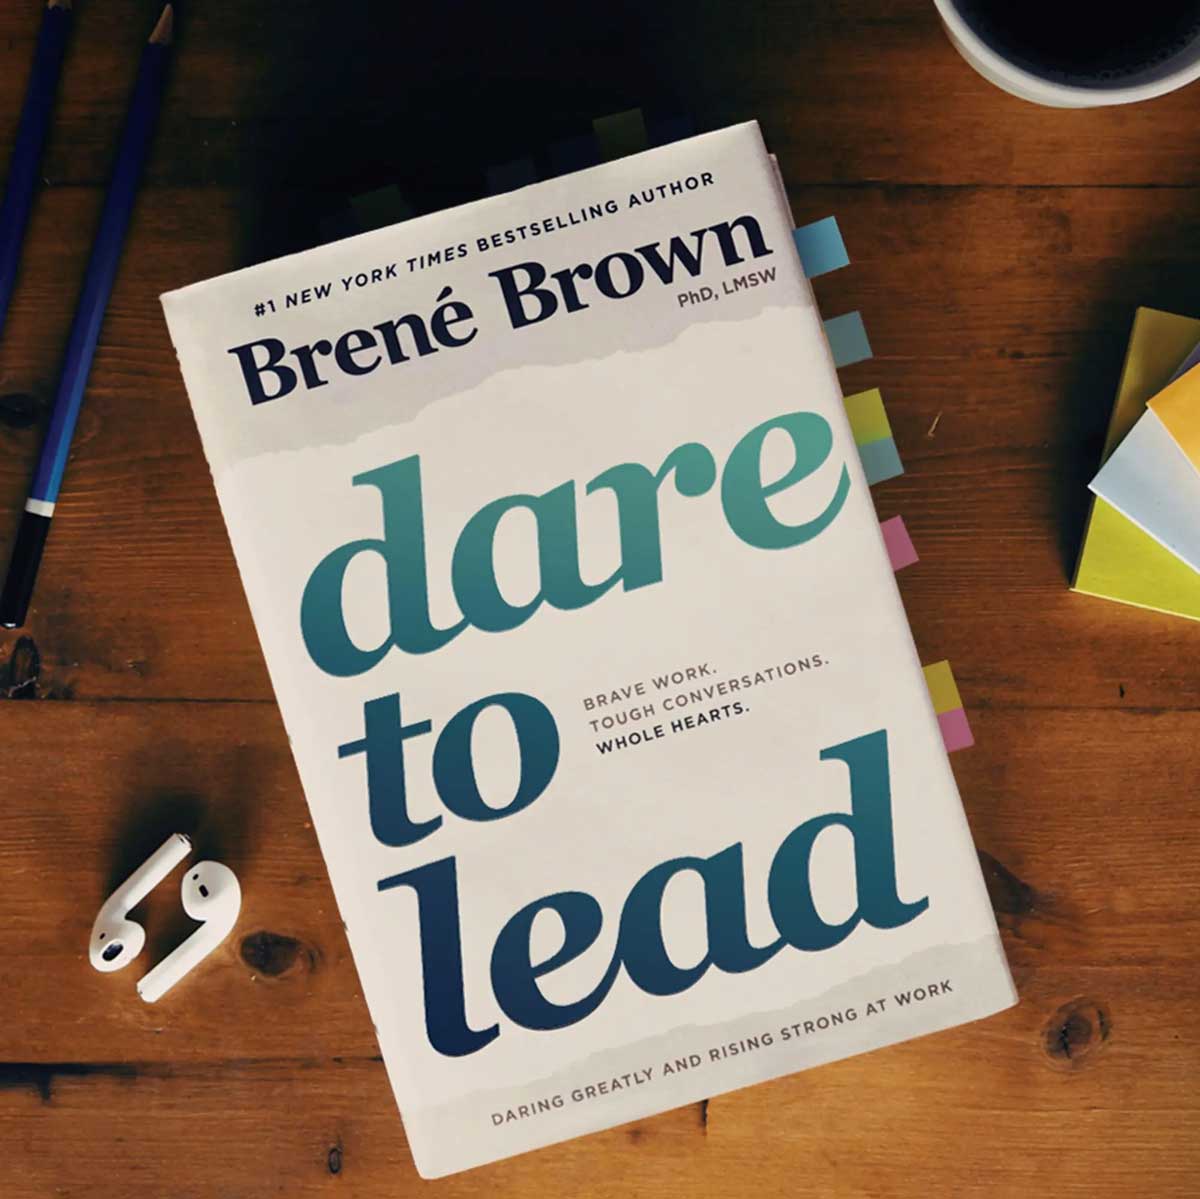 dare to lead